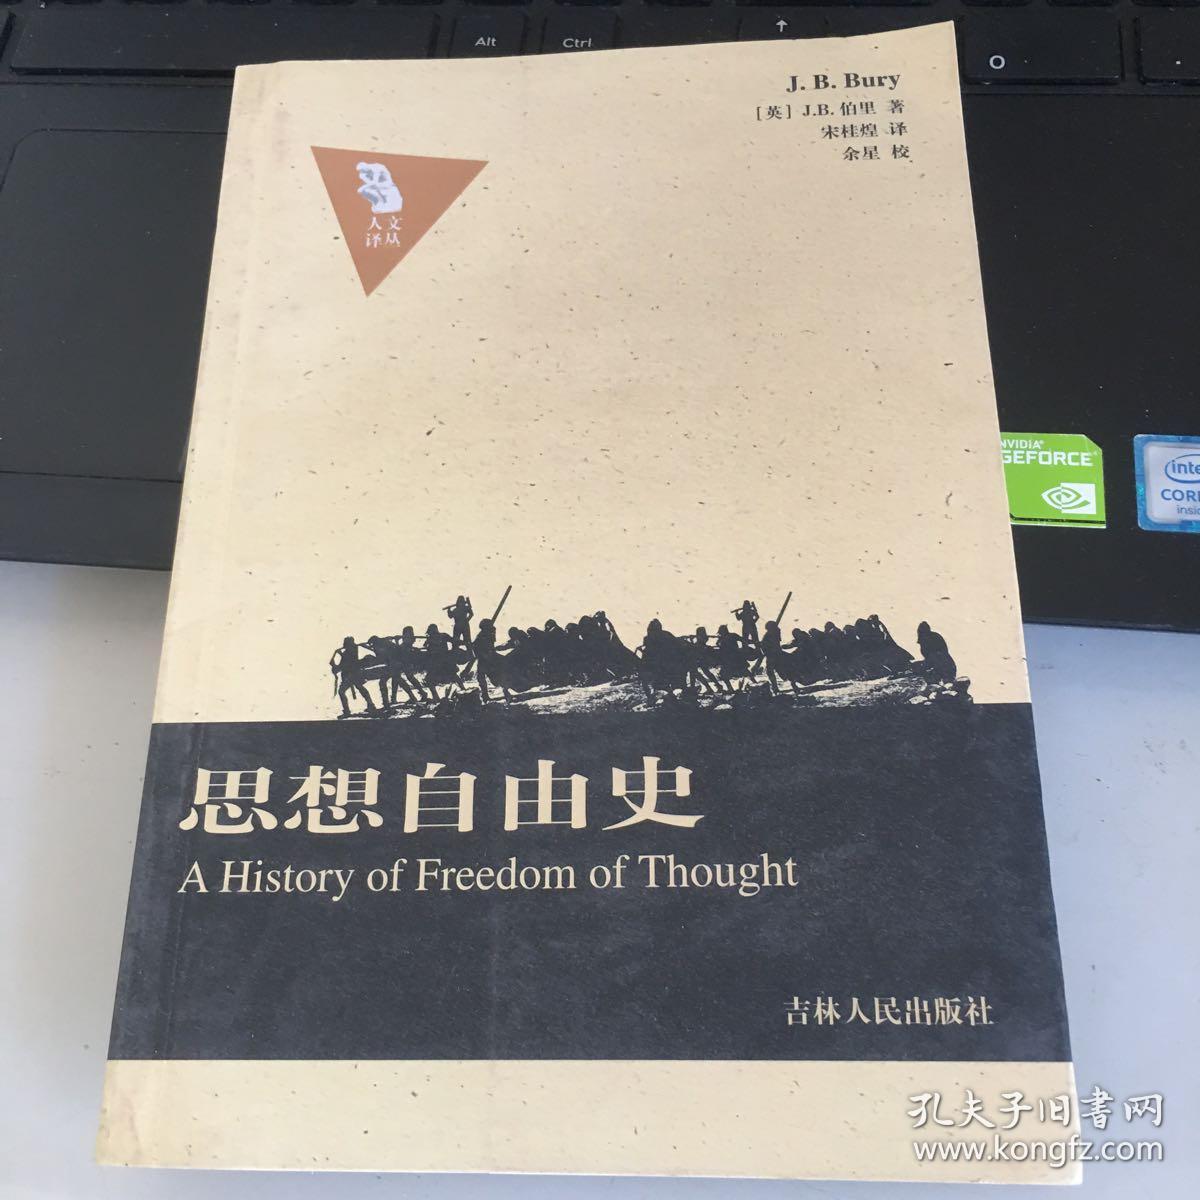 思想自由史:a history of freedom of thought